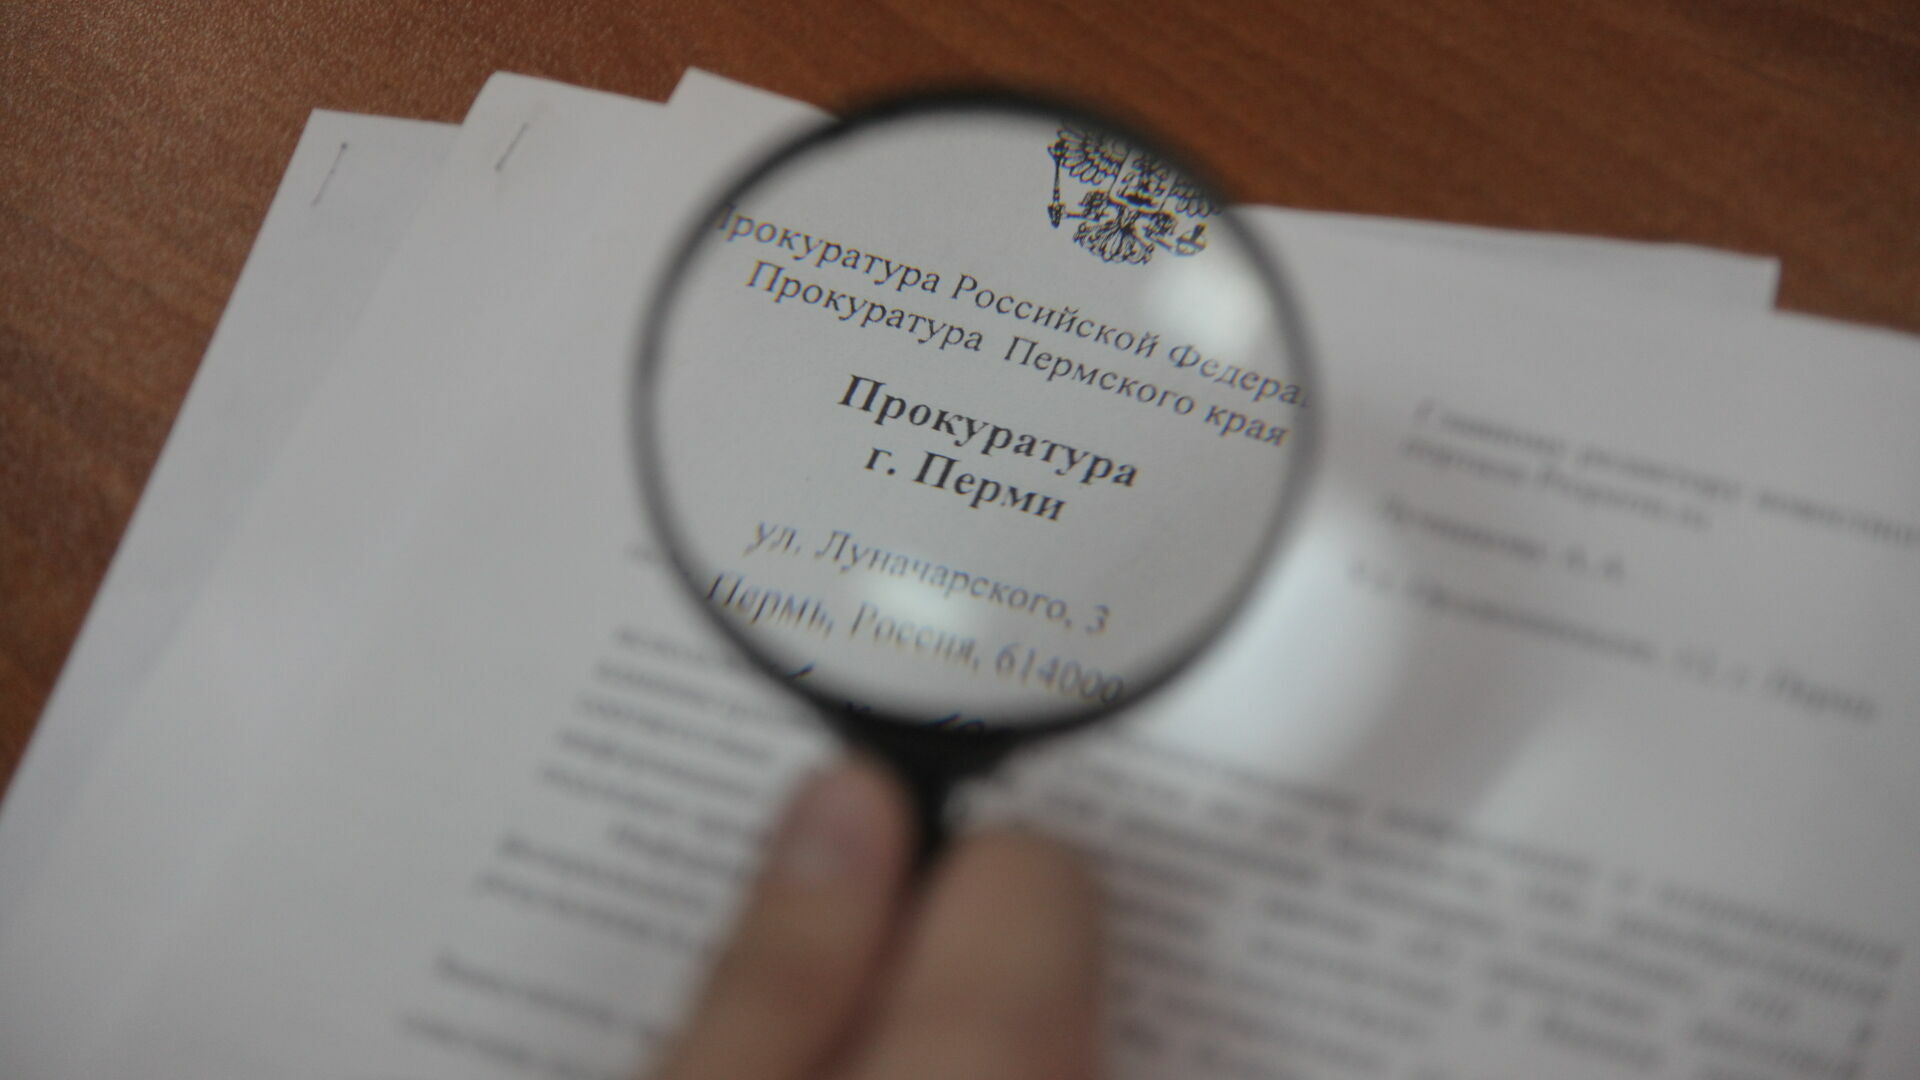 Андрея Юмшанова утвердят новым прокурором Прикамья 19 апреля